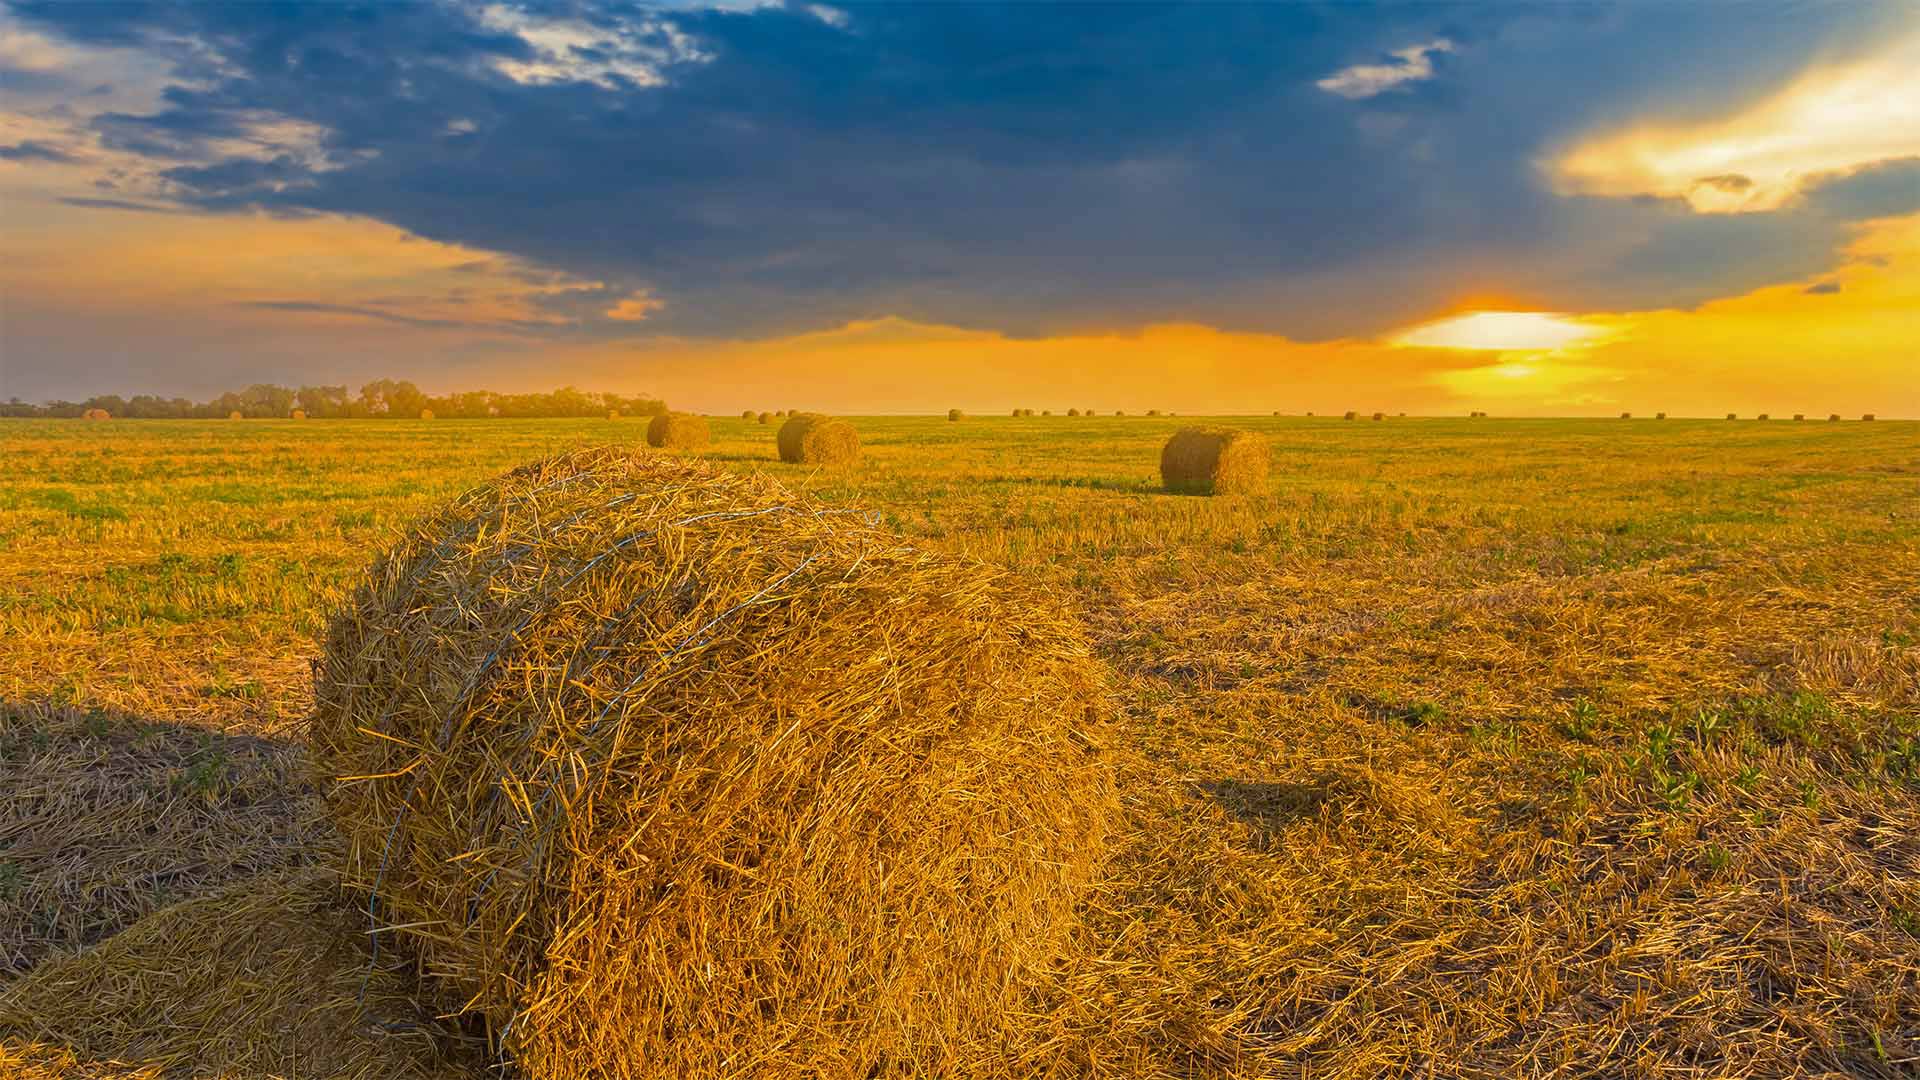 Wheat field in Ukraine - Yuriy Kulik/Getty Images)